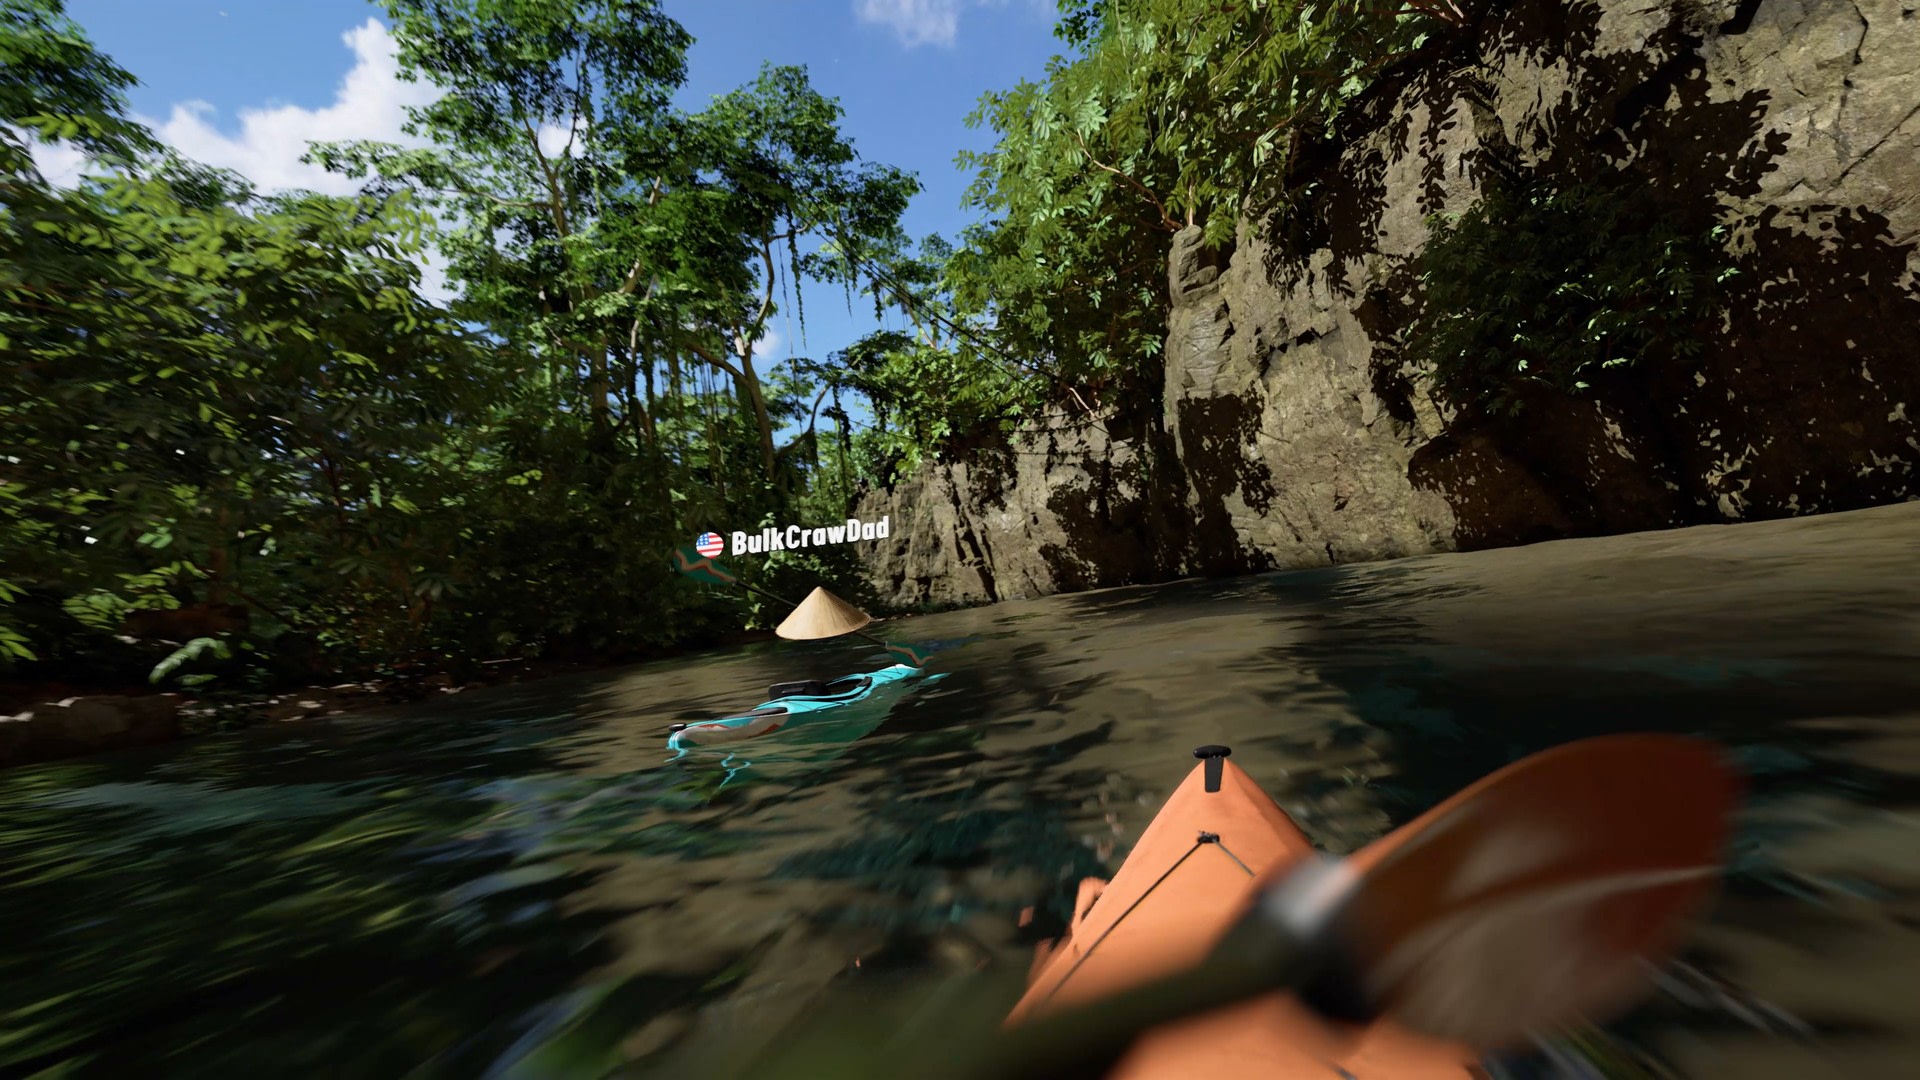 Kayak VR: Mirage Picture